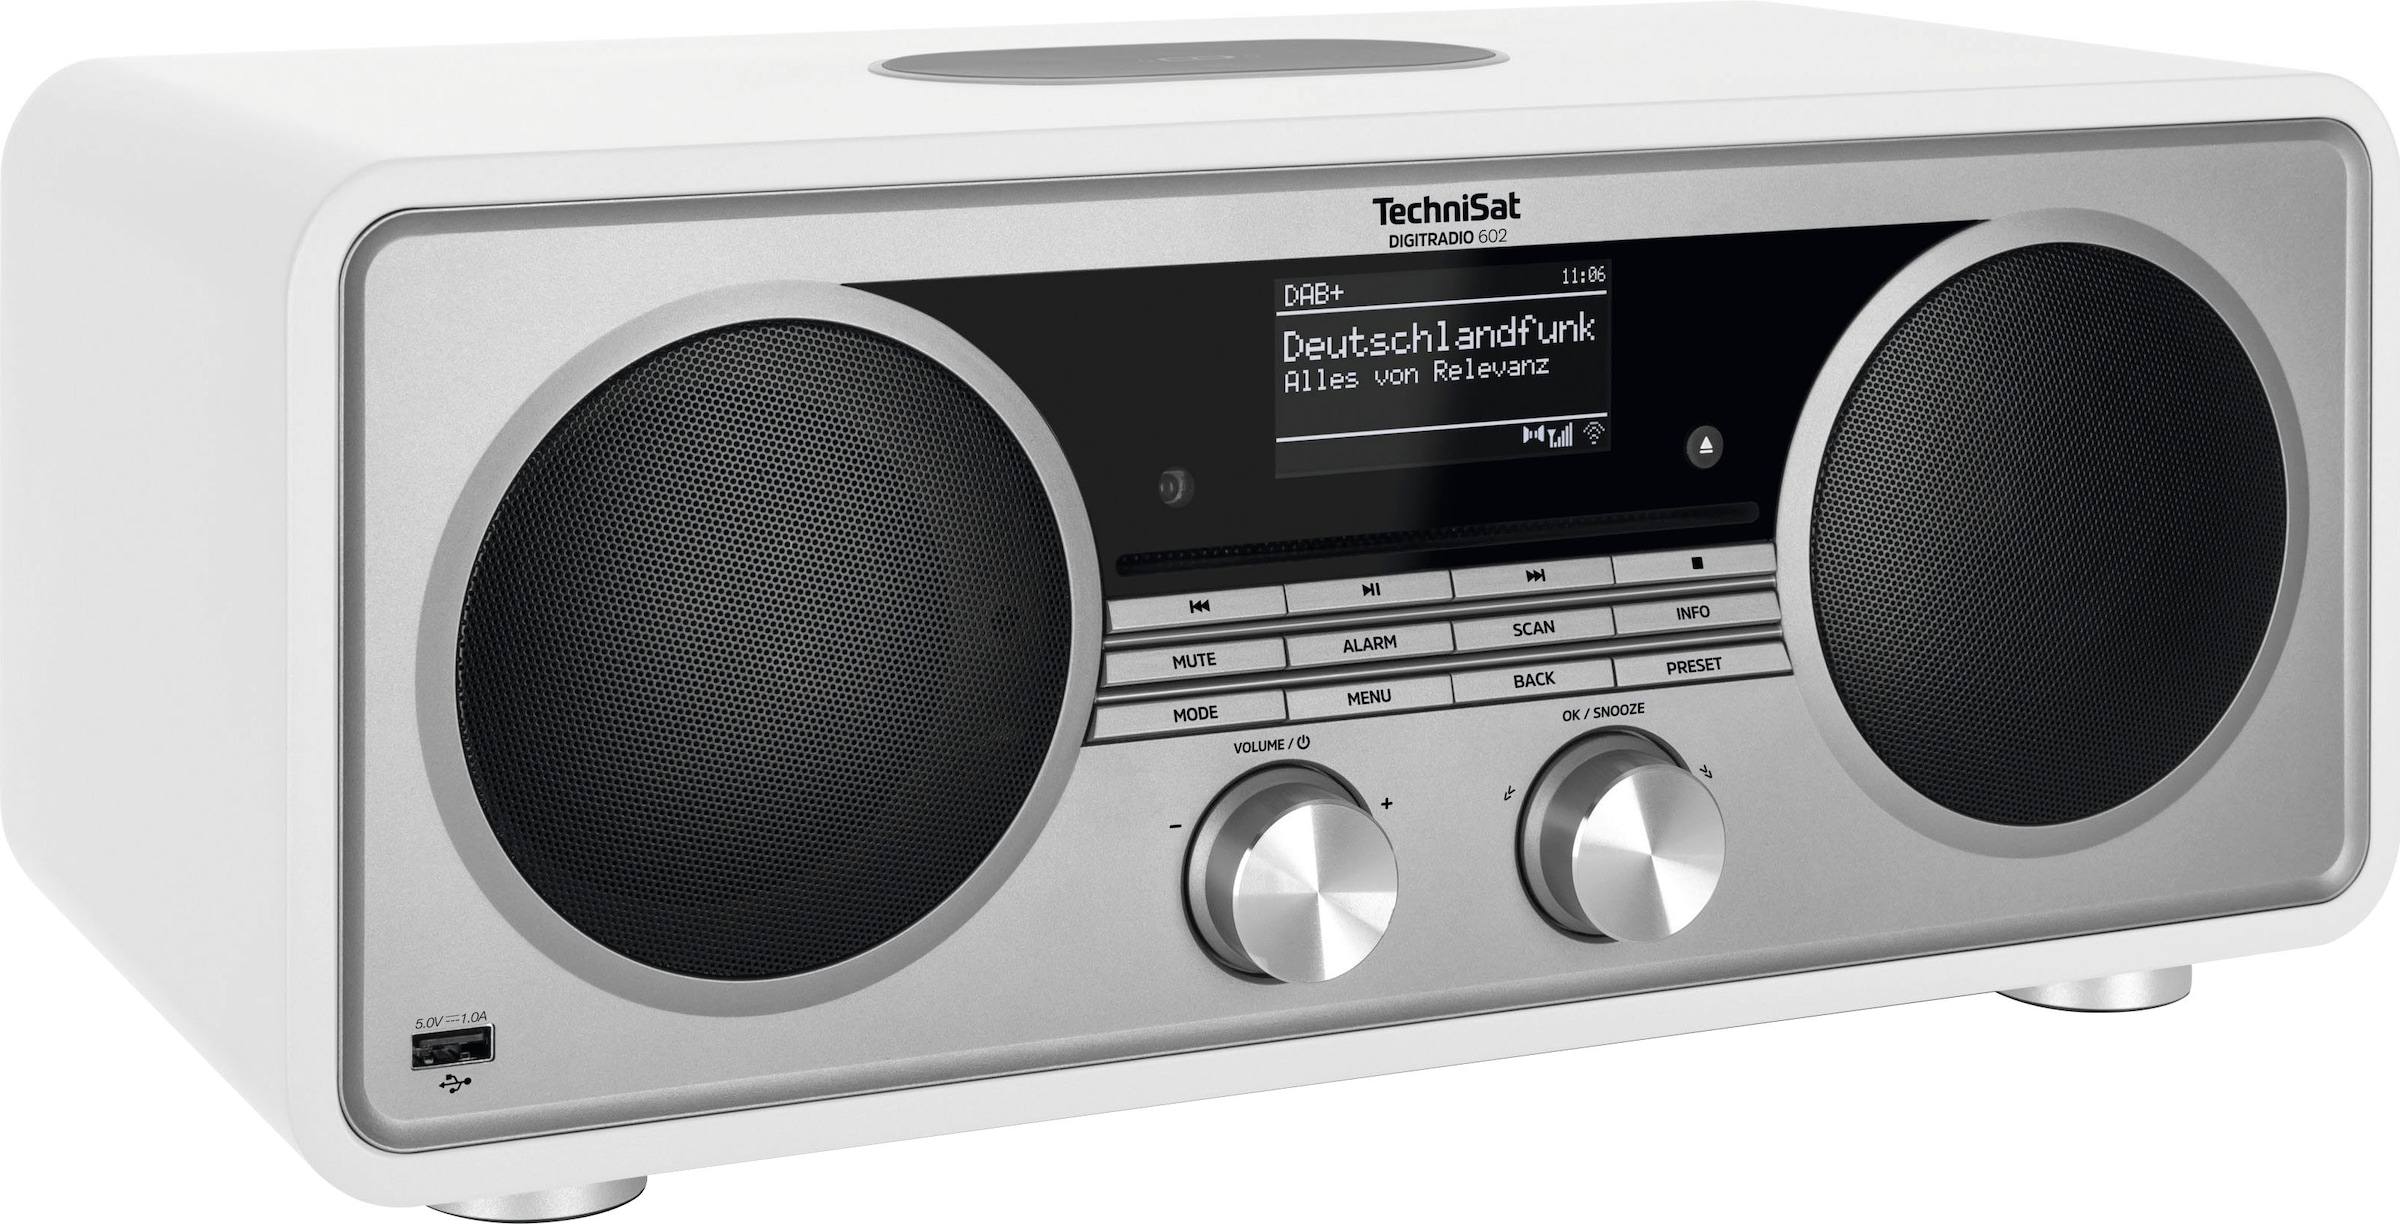 CD-Player OTTO RDS im Shop 70 (Bluetooth-WLAN Stereoanlage, TechniSat W), jetzt (DAB +)-UKW »DIGITRADIO Online mit Digitalradio 602«, Internet-Radio